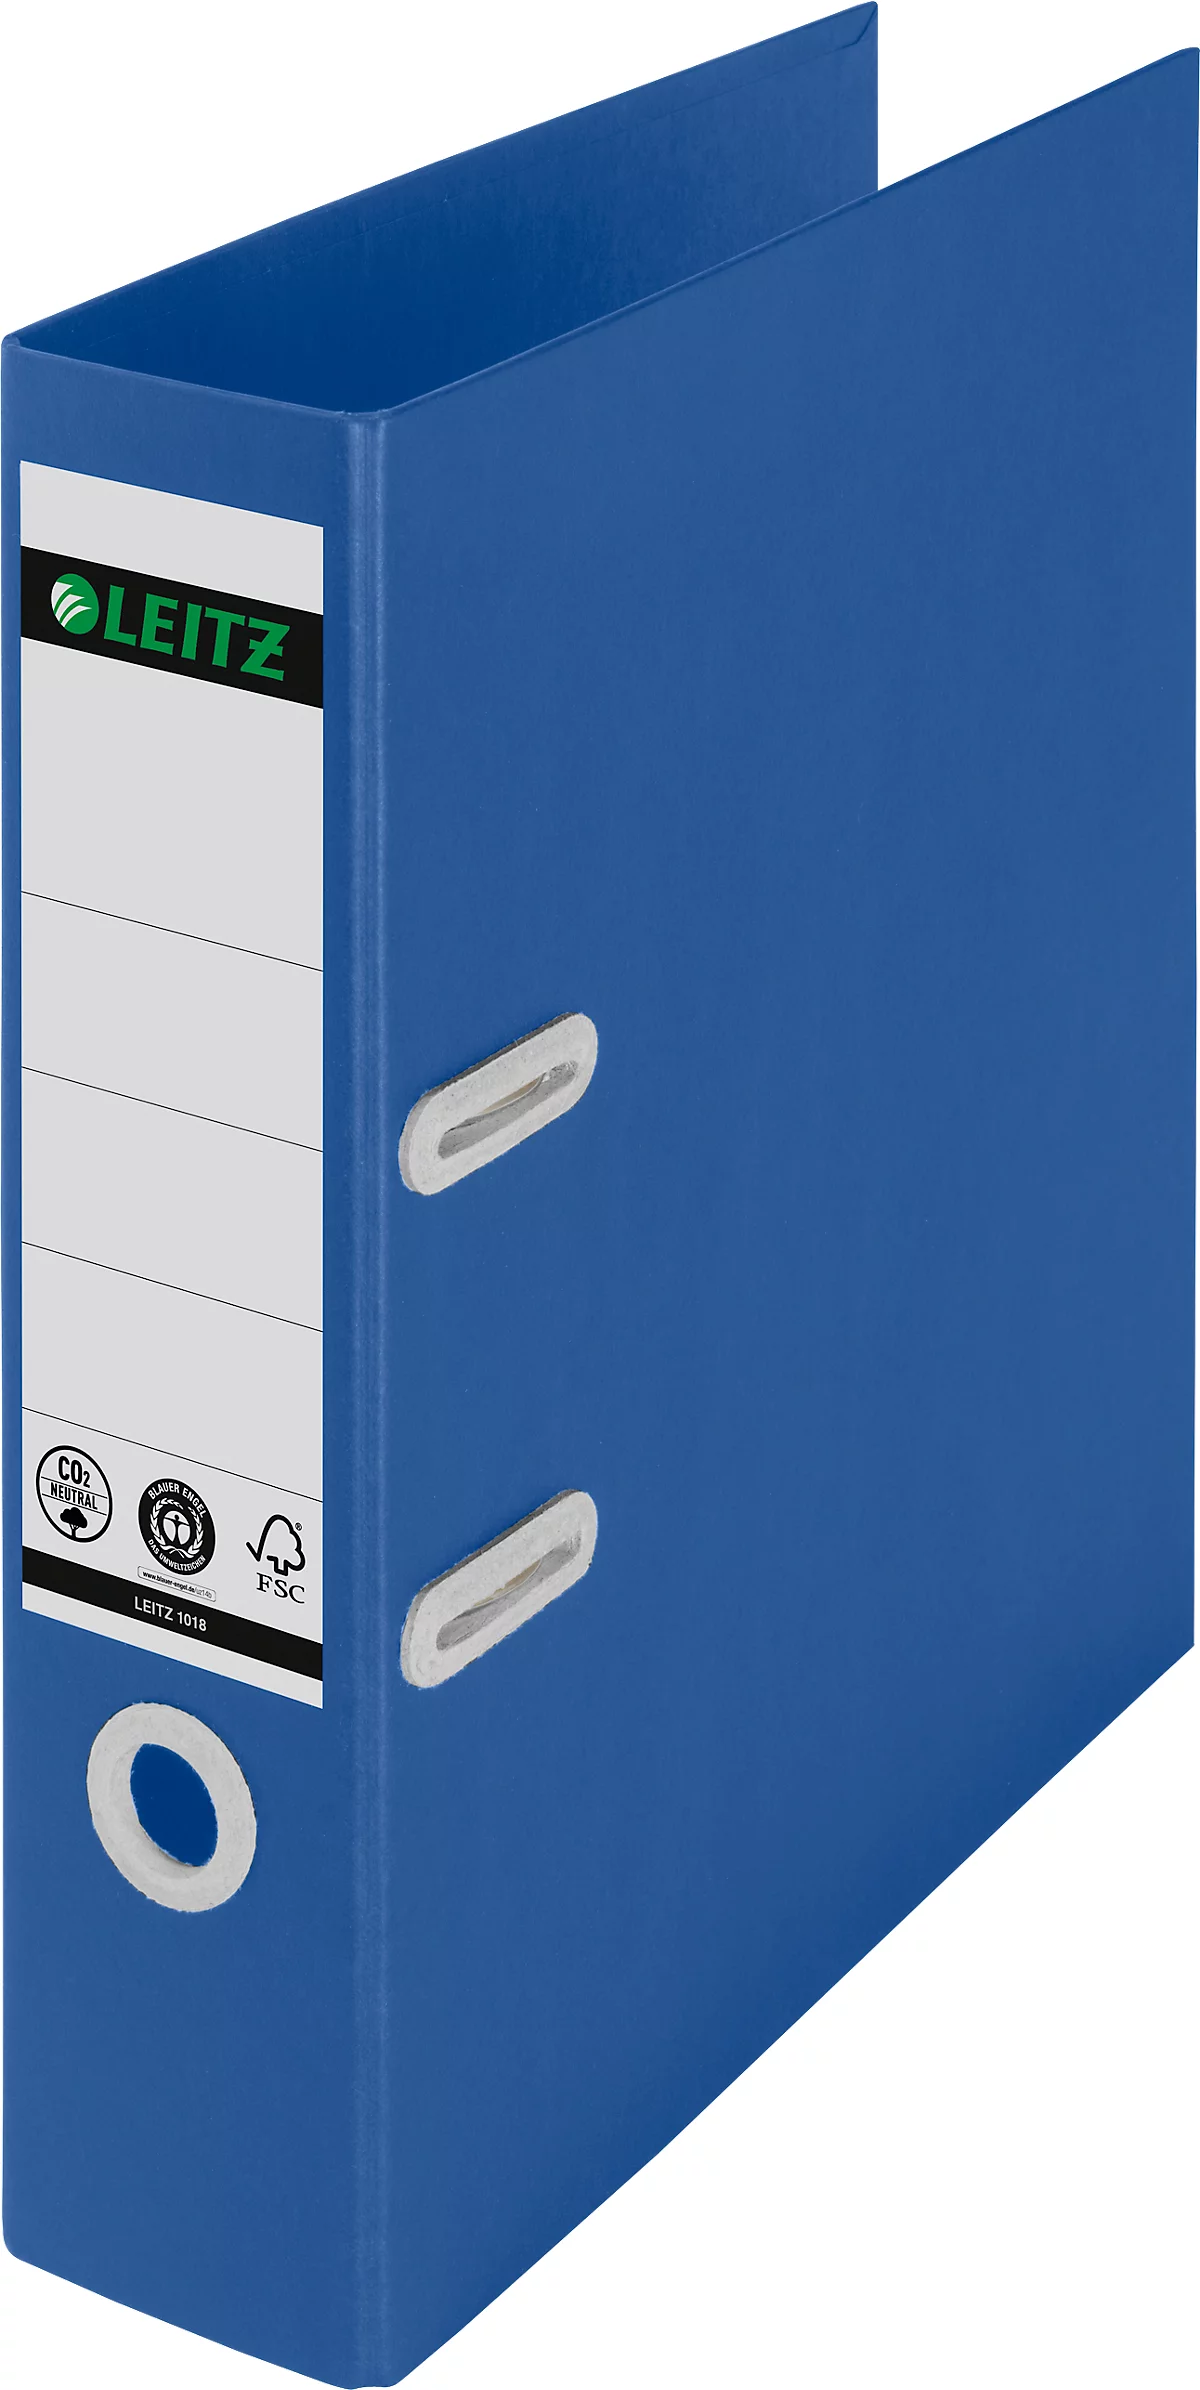 LEITZ® Ordner Recycle, DIN A4, Rückenbreite 80 mm, 180°-Hebelmechanik, Rückenschild & Griffloch, zu 100 % recycelbar, blau